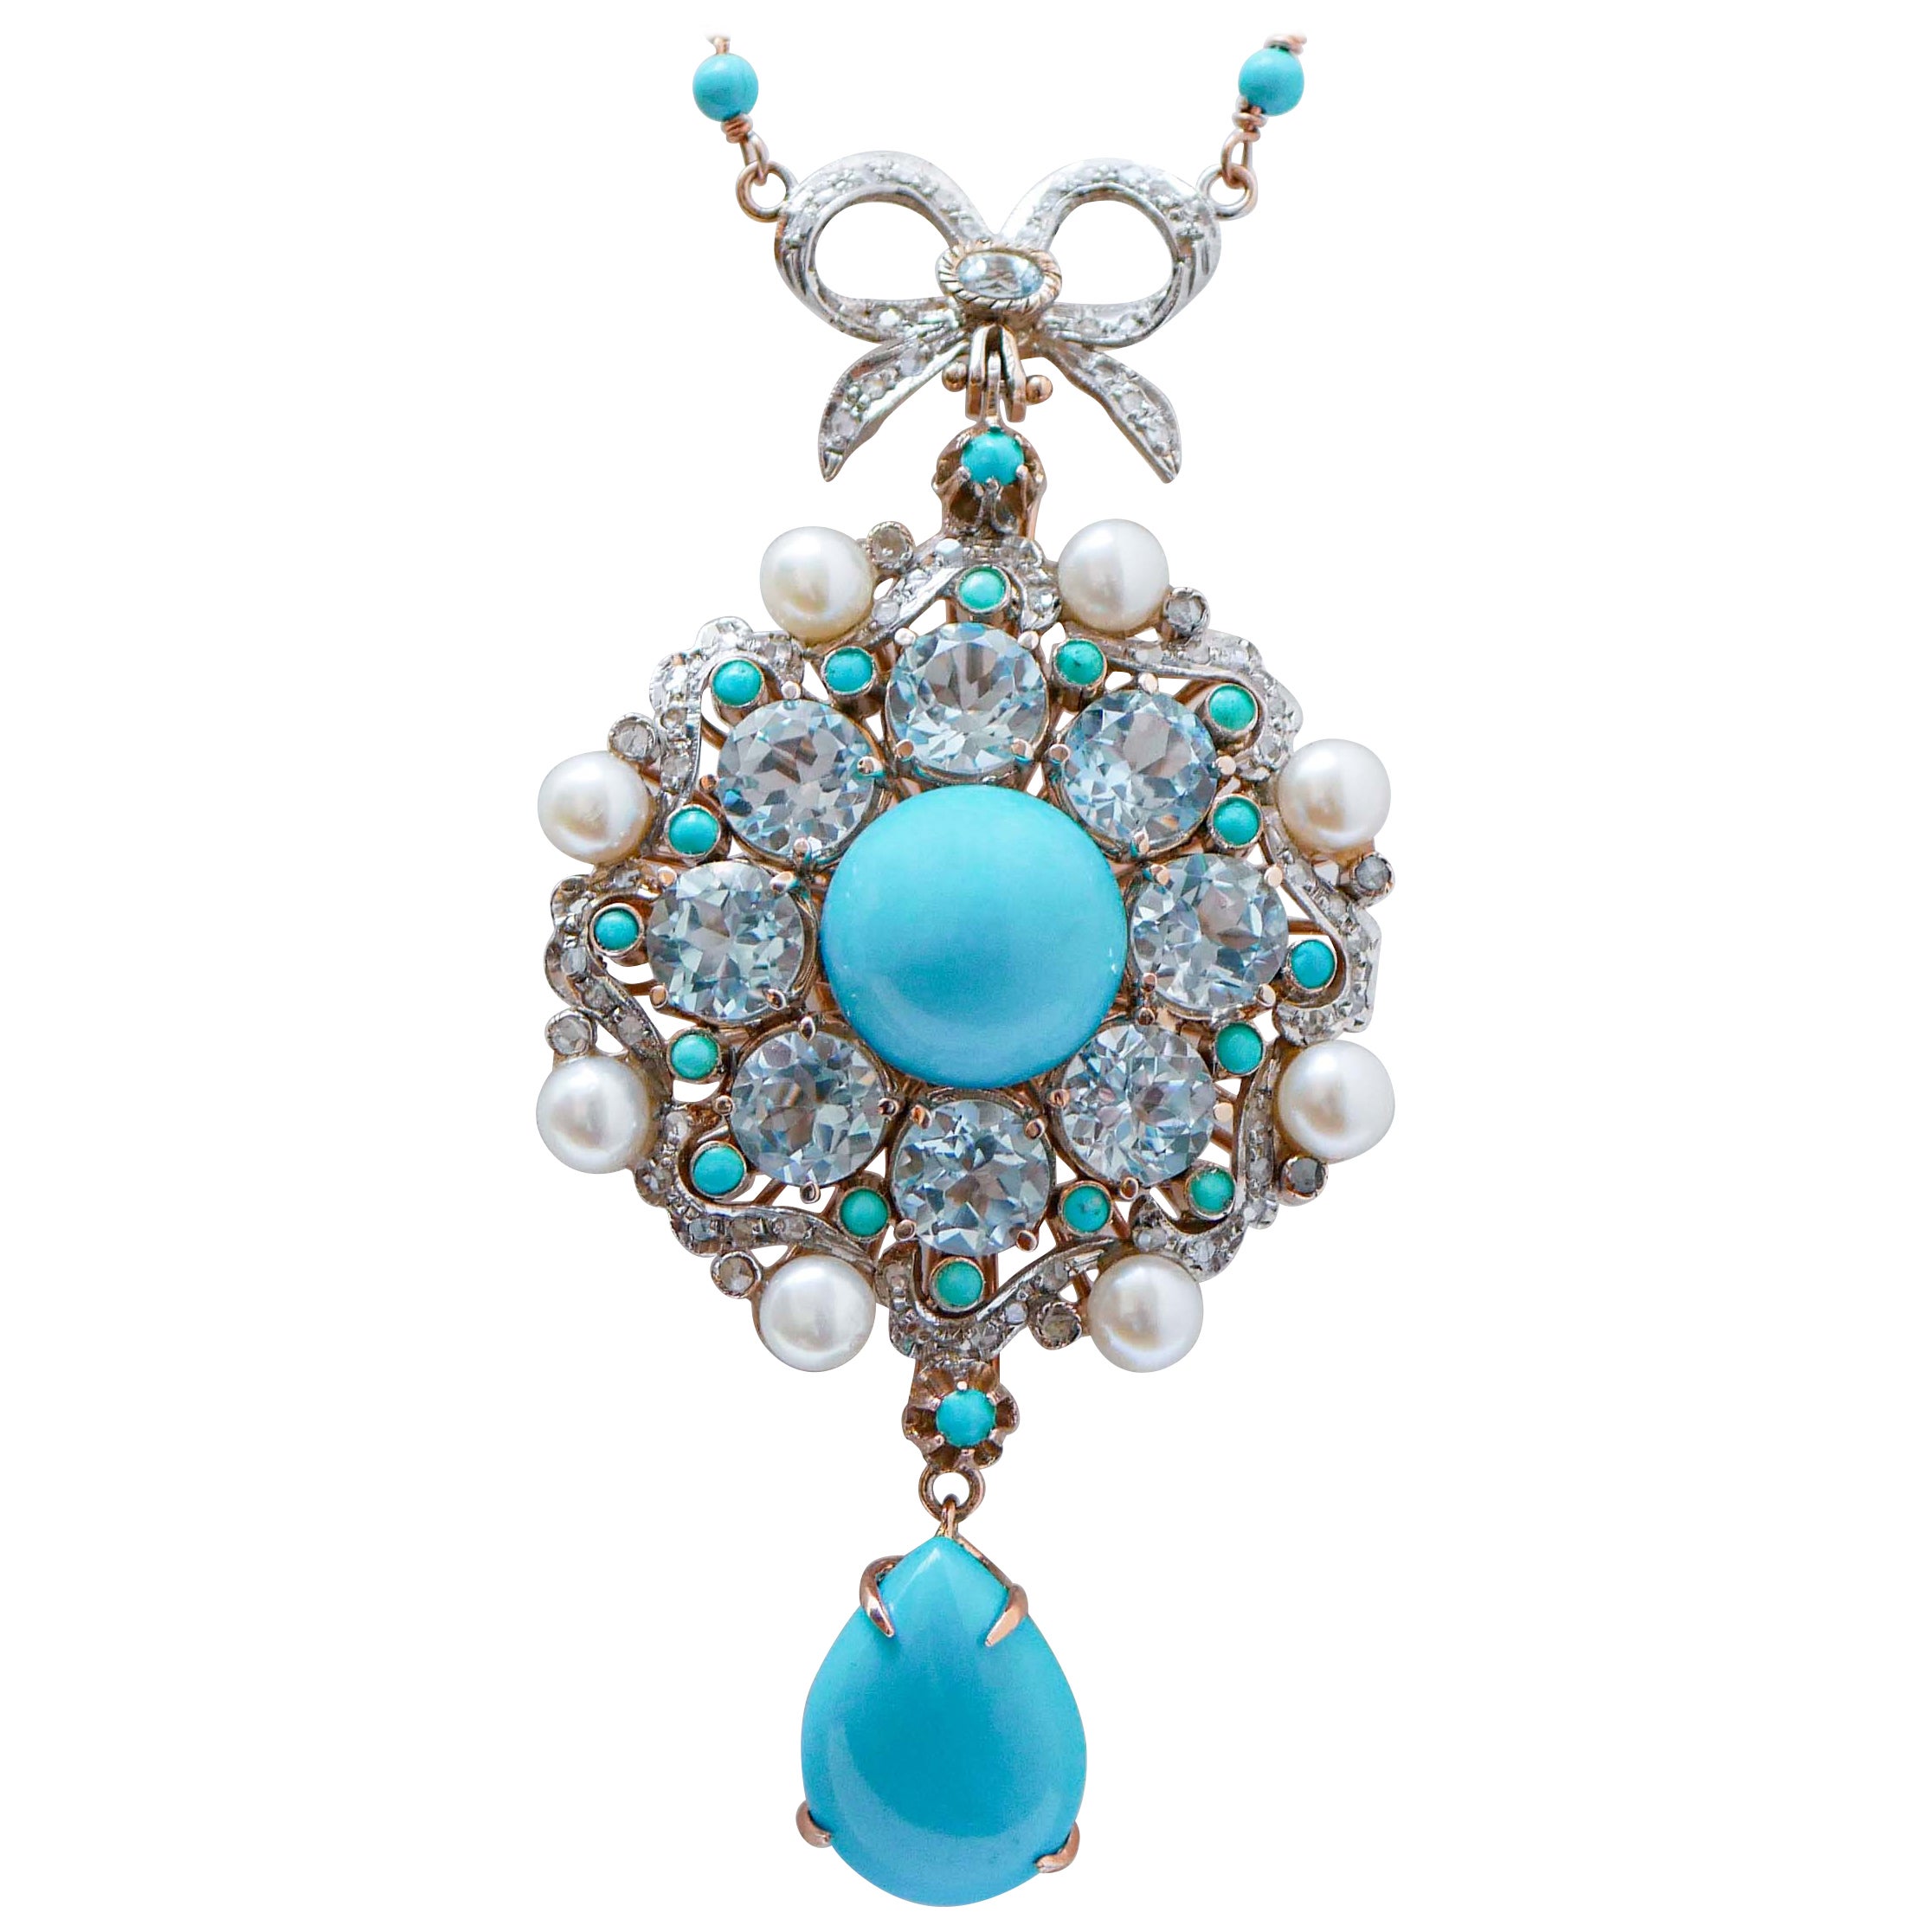 Turquoise, Magnesite, Aquamarine Colour Topazs, Diamonds, Pearls,  Necklace.